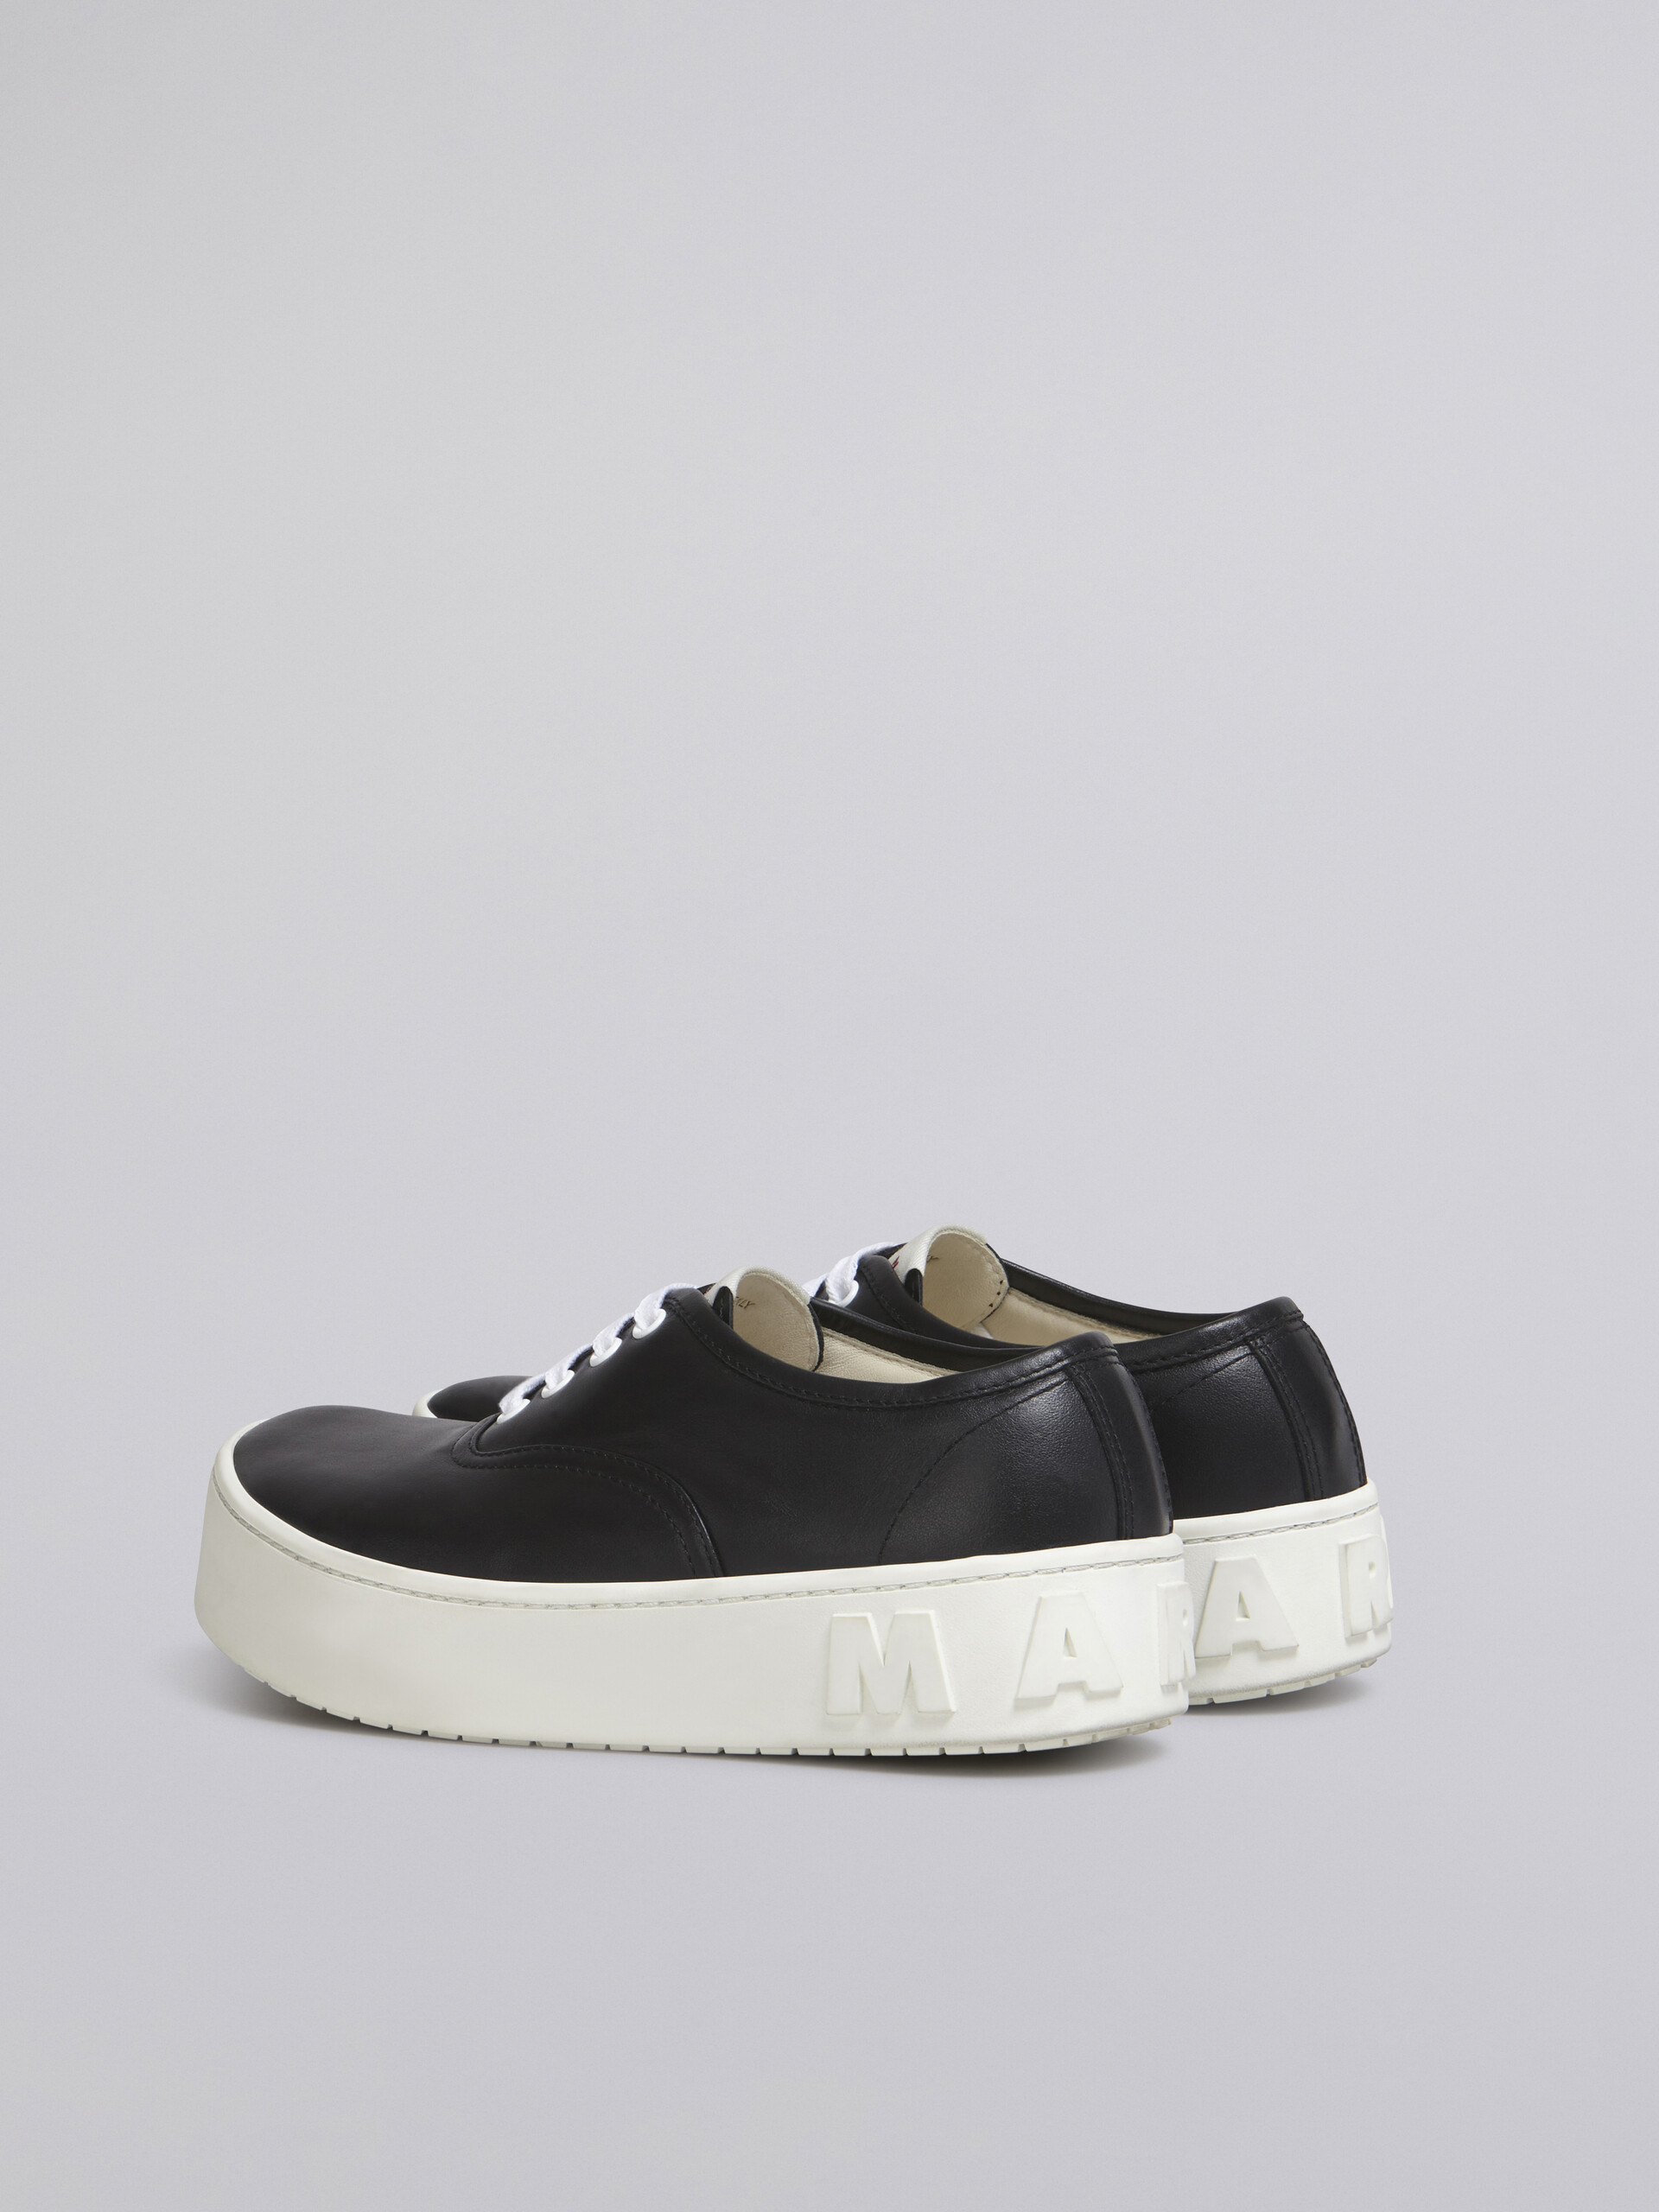 Sneaker in vitello con maxi logo in rilievo nero - Sneakers - Image 3